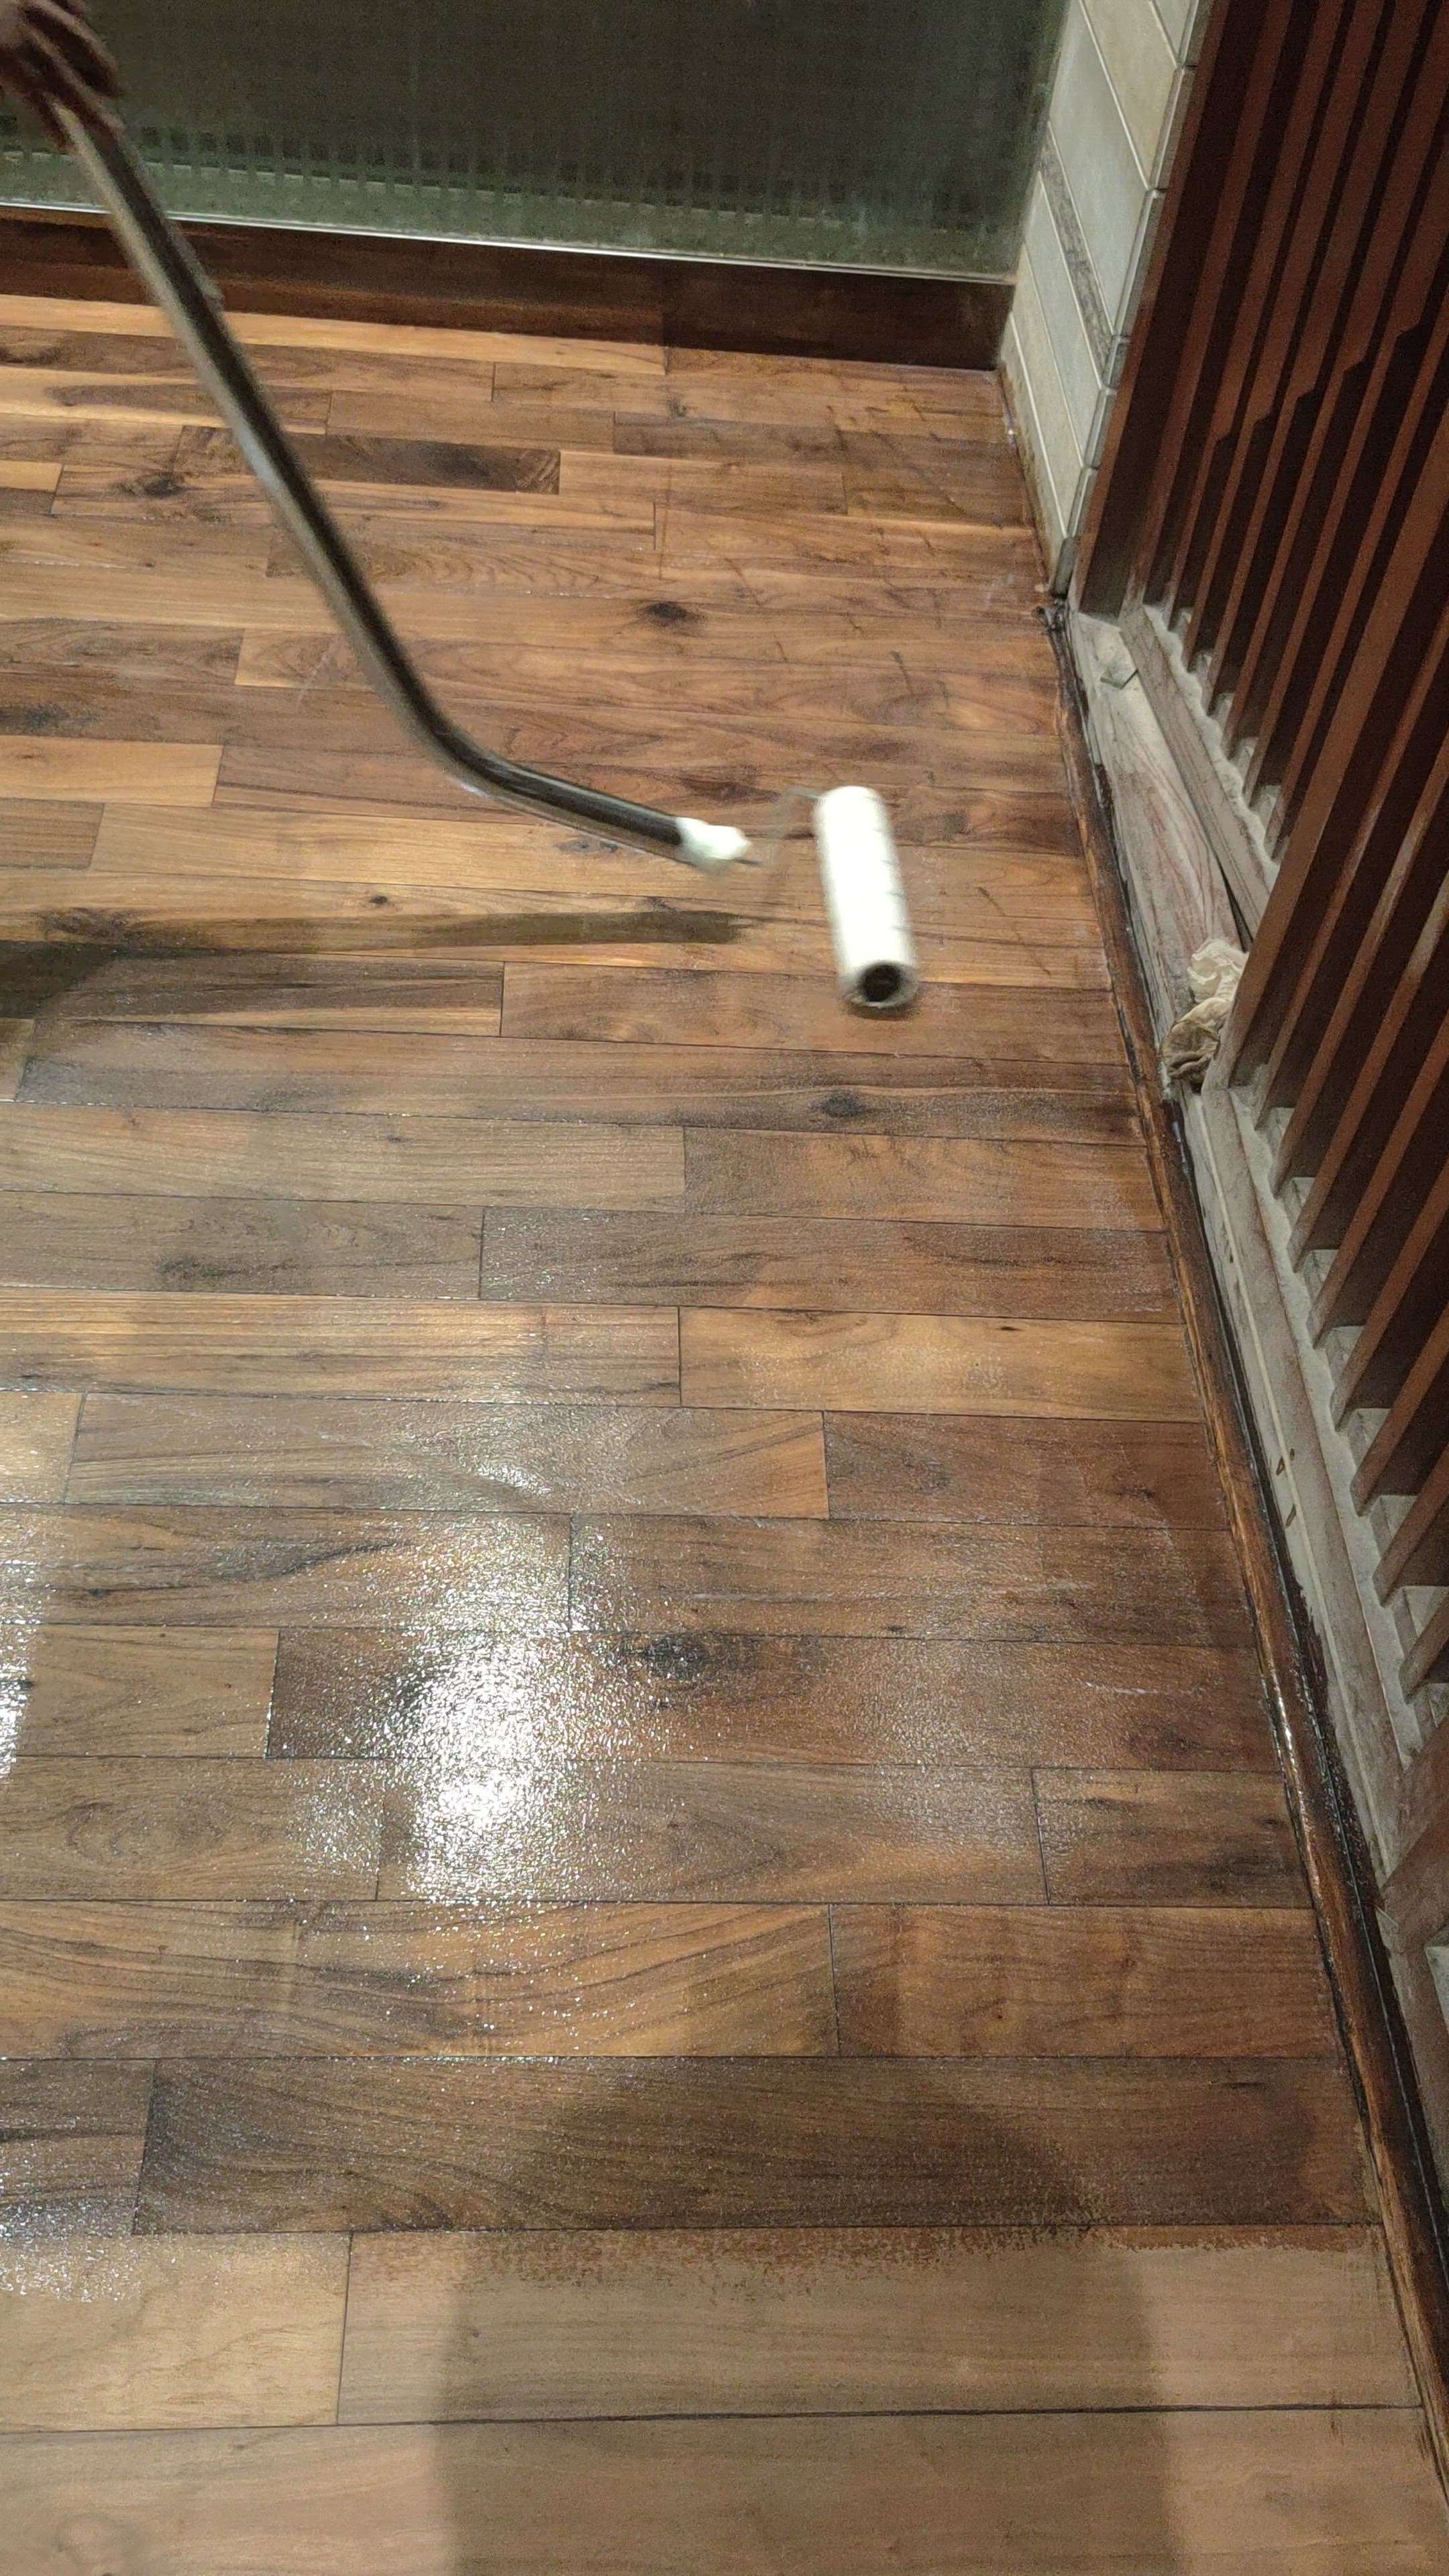 Wooden floor refinishing work